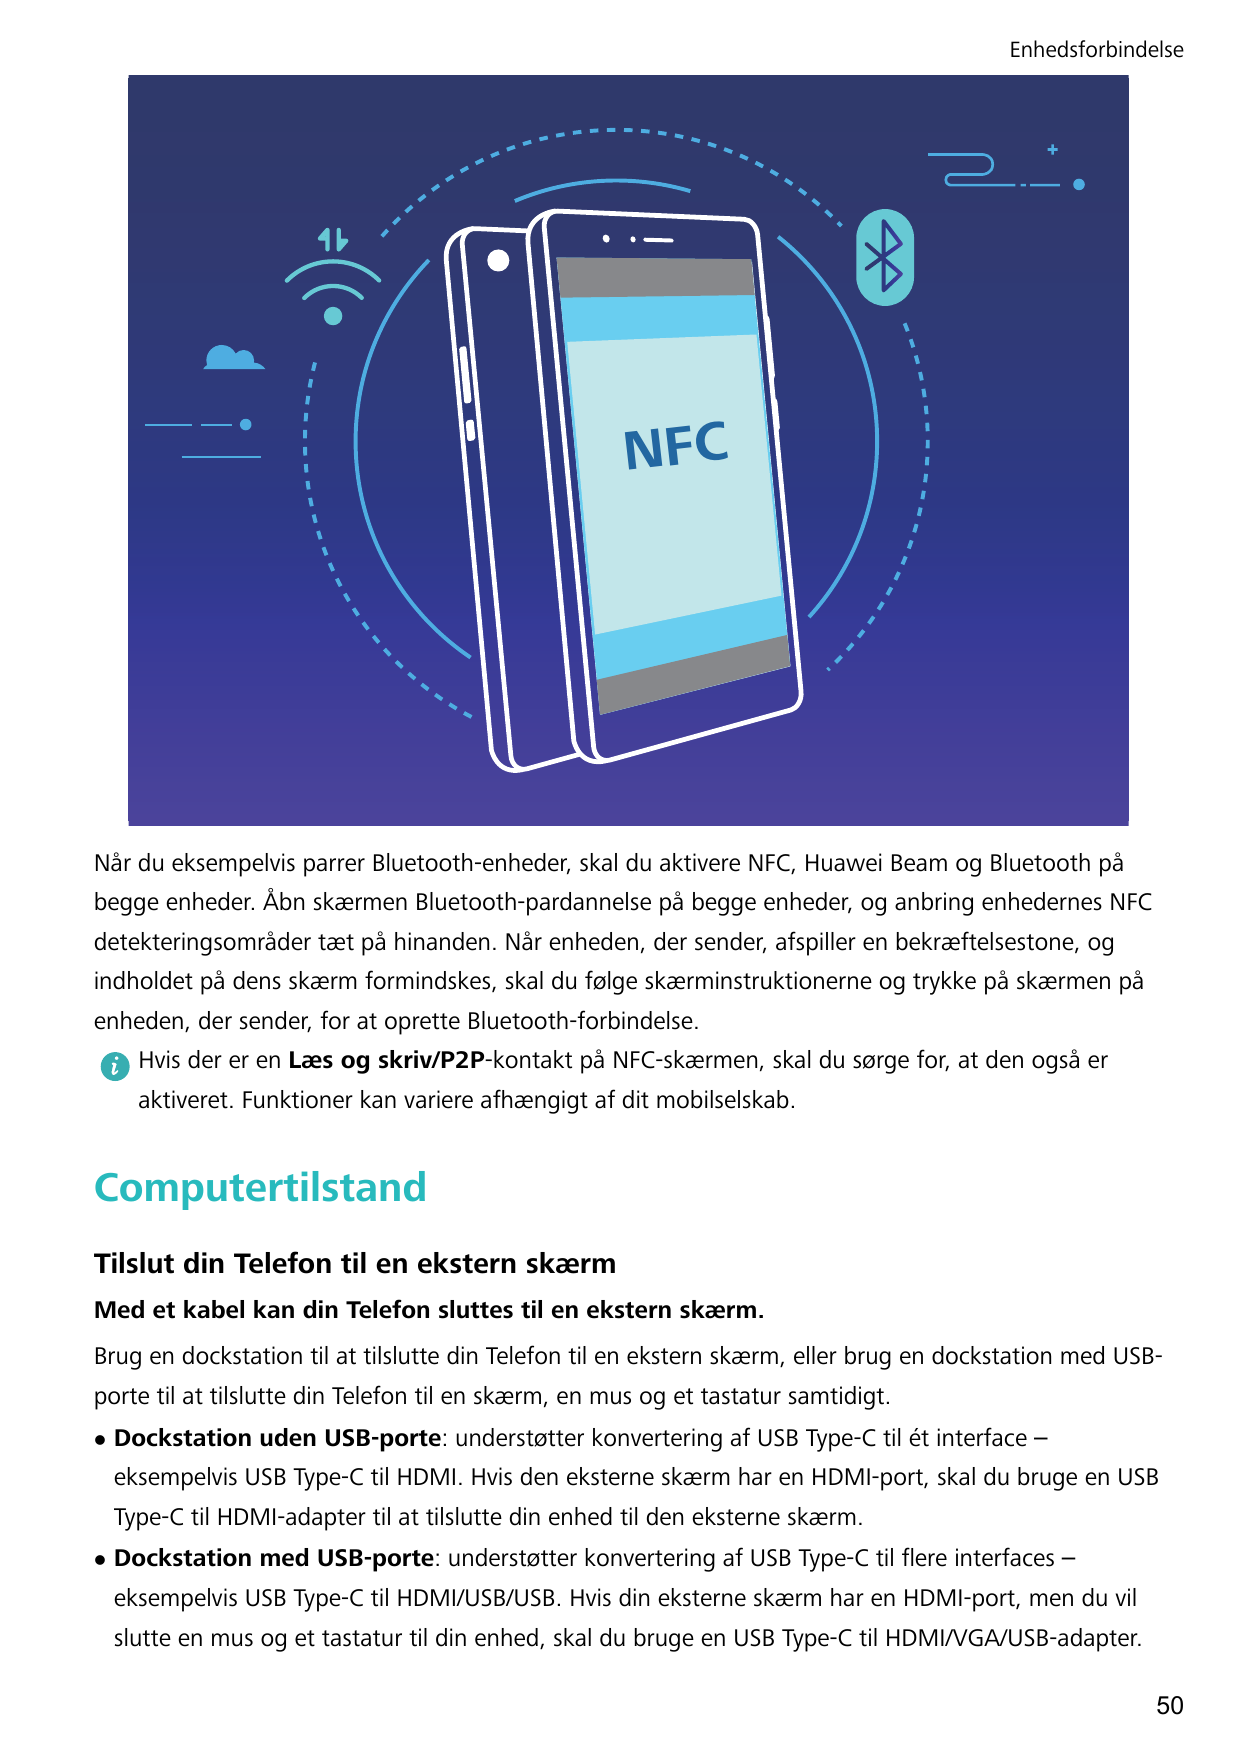 EnhedsforbindelseNFCNår du eksempelvis parrer Bluetooth-enheder, skal du aktivere NFC, Huawei Beam og Bluetooth påbegge enheder.